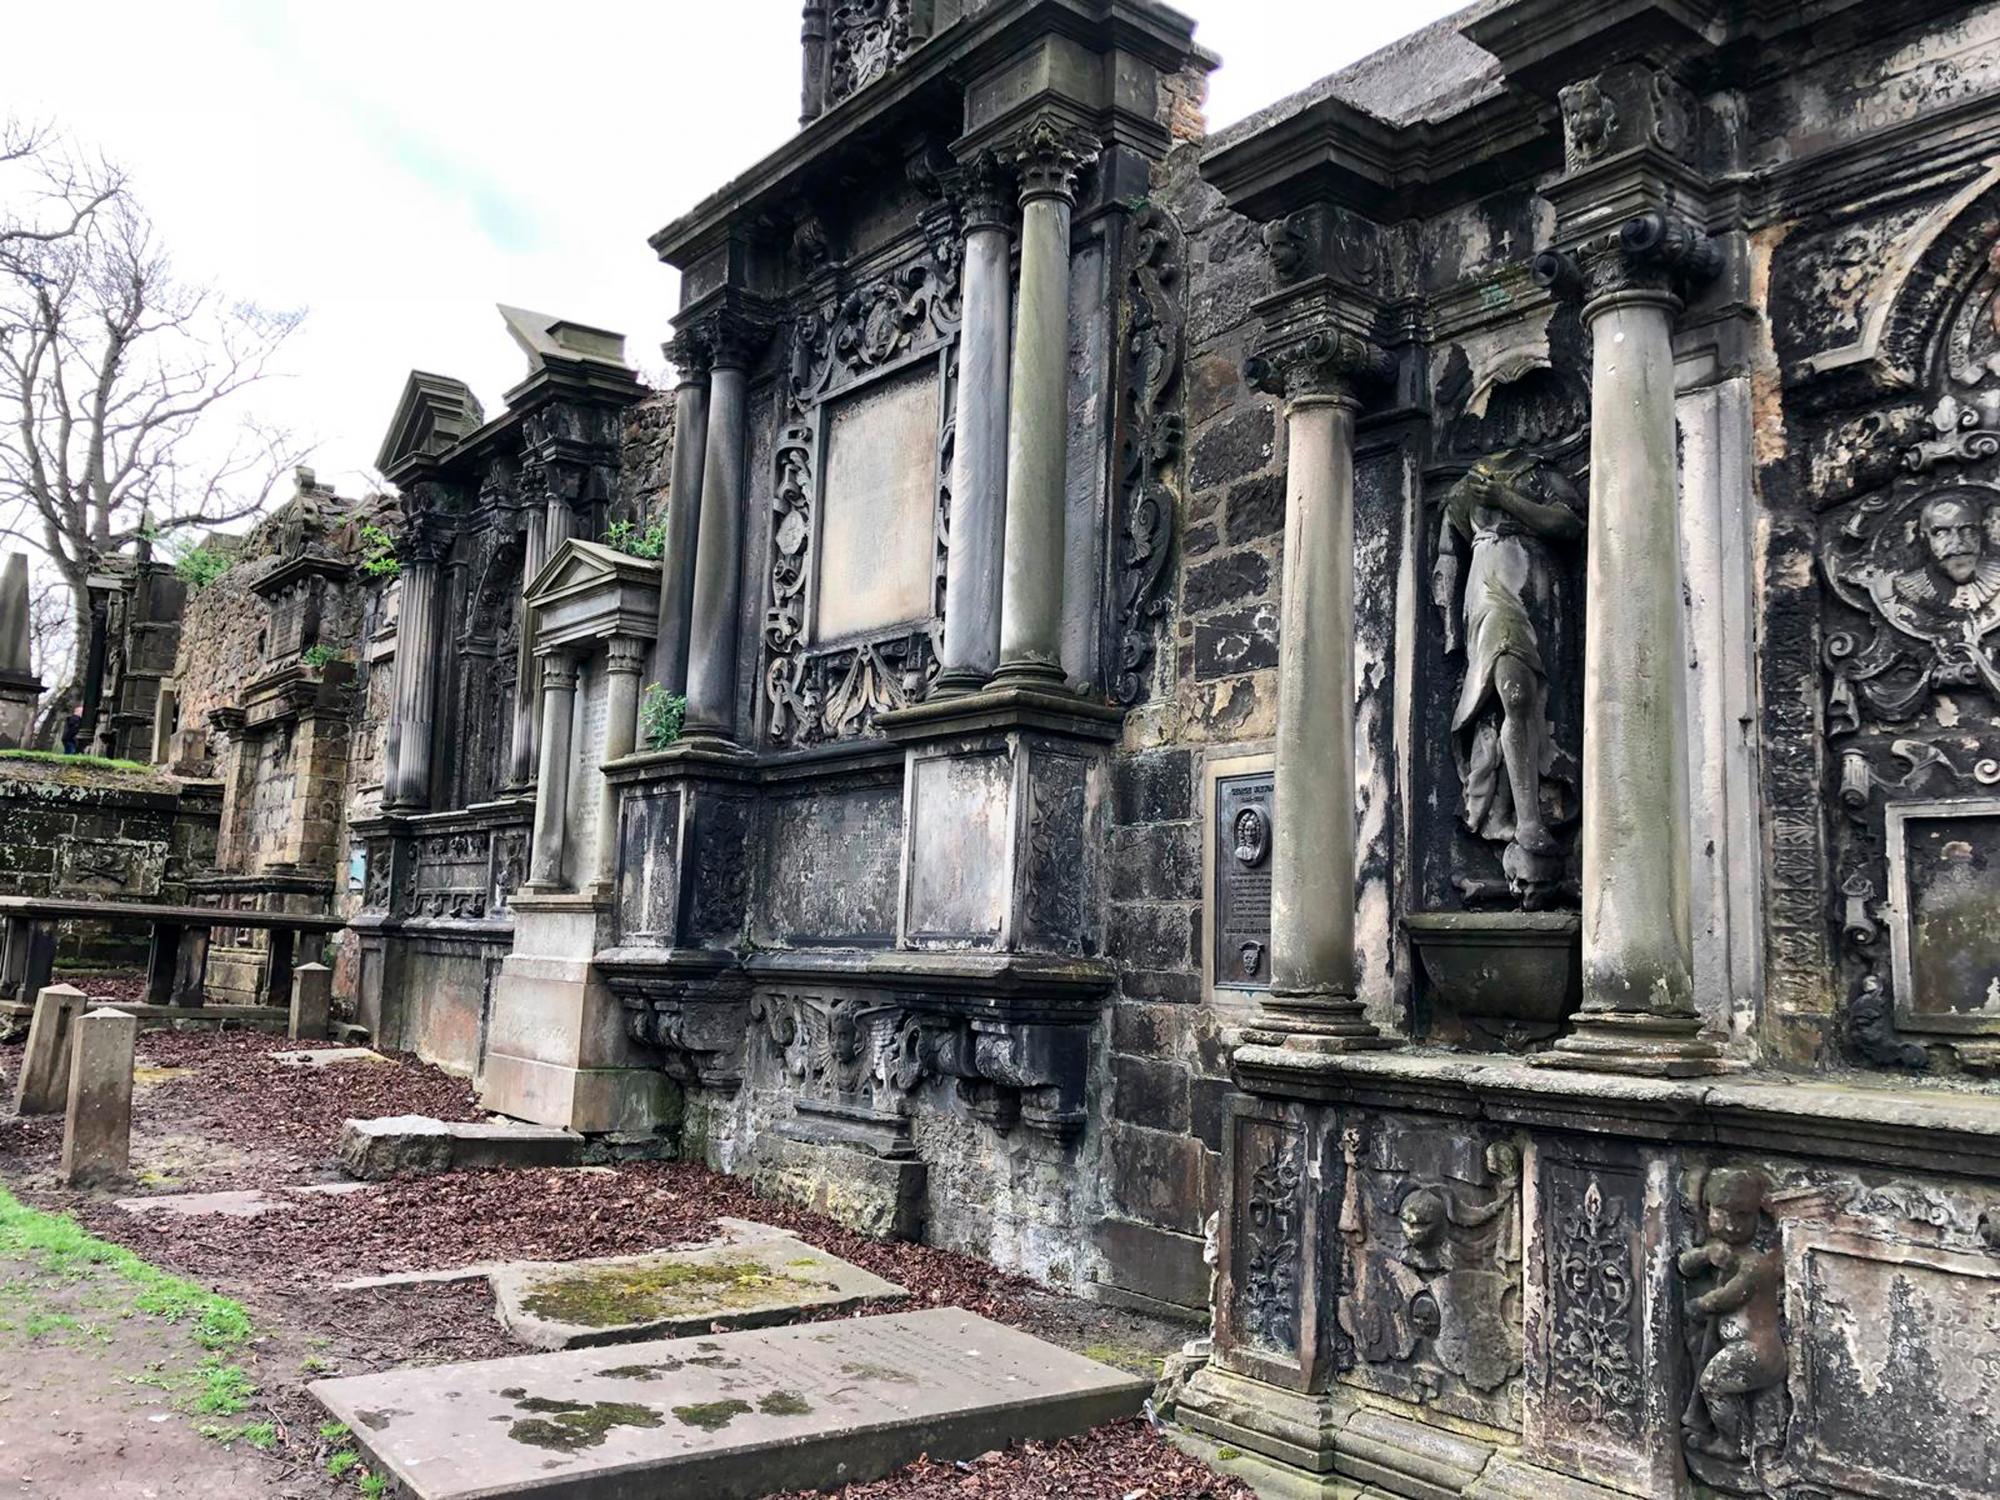 Edimburgo cuenta con un bello cementerio, el de Greyfriars. Se trata de un lugar que recibe muchos visitantes que llegan allí atraídos, en parte, por la historia del perro Bobby.